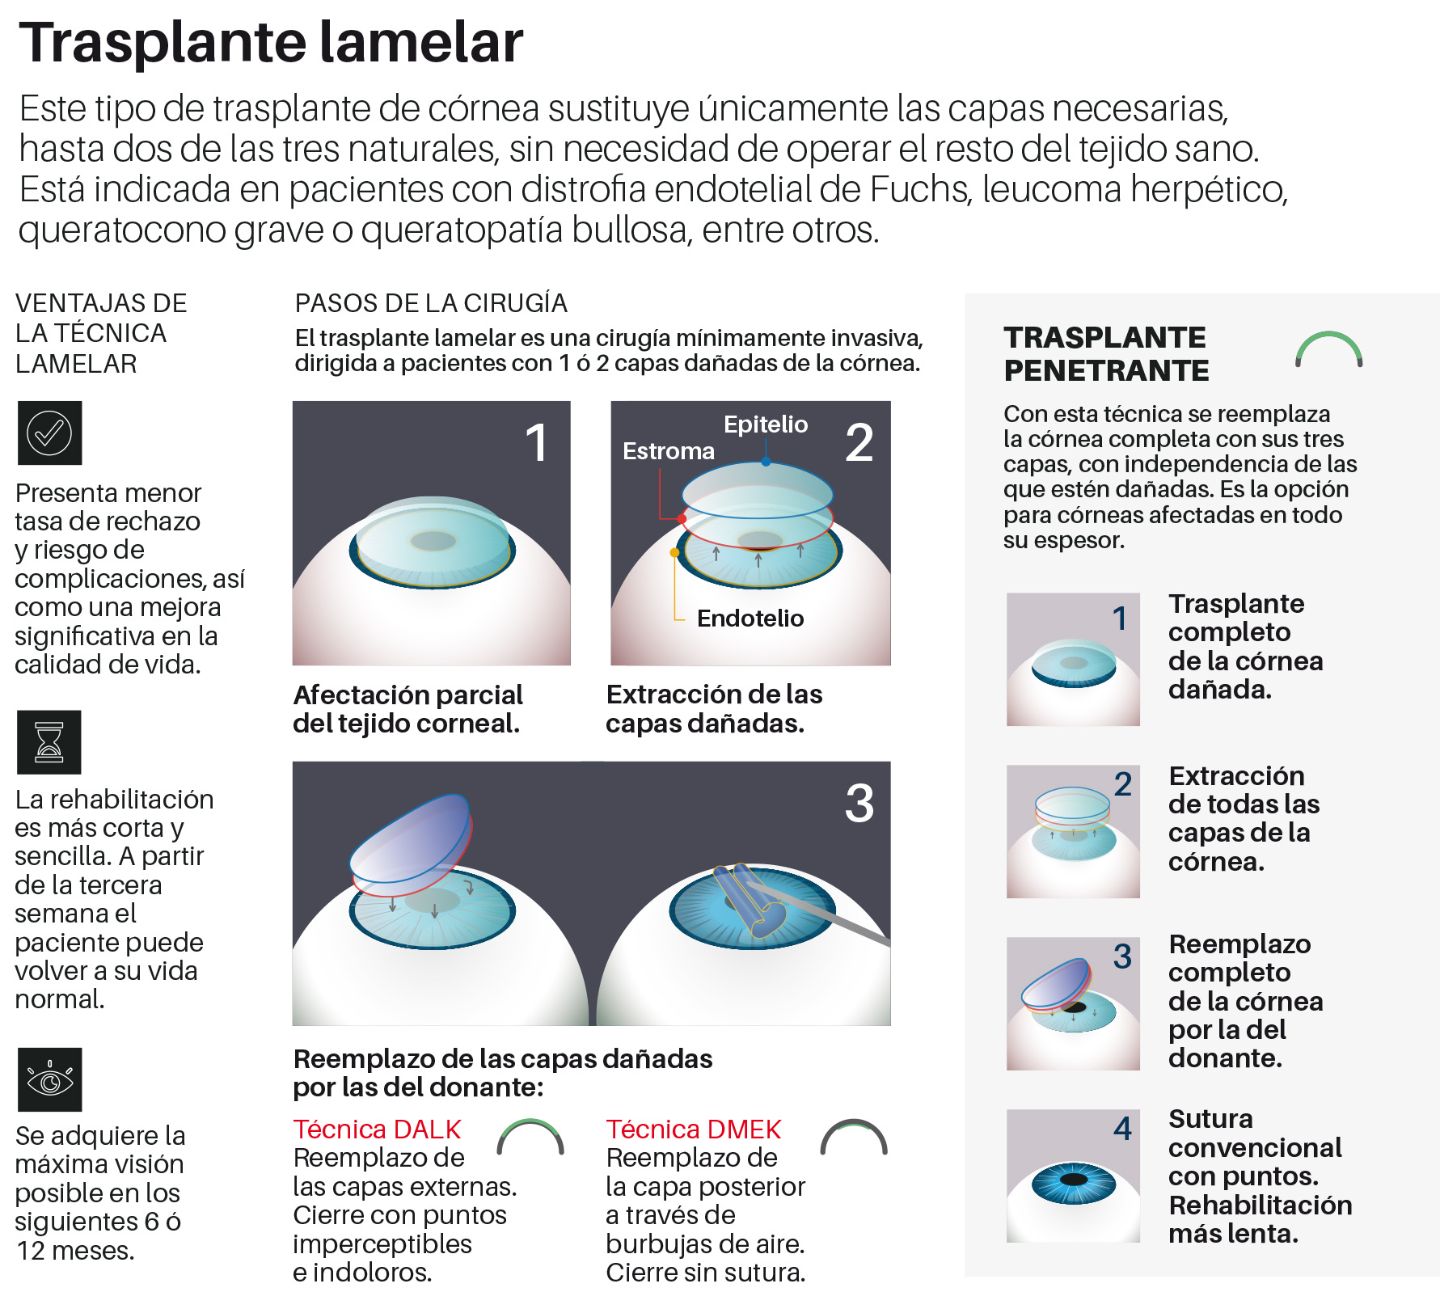 Infografía del trasplante lamelar en la Clínica Universidad de Navarra.